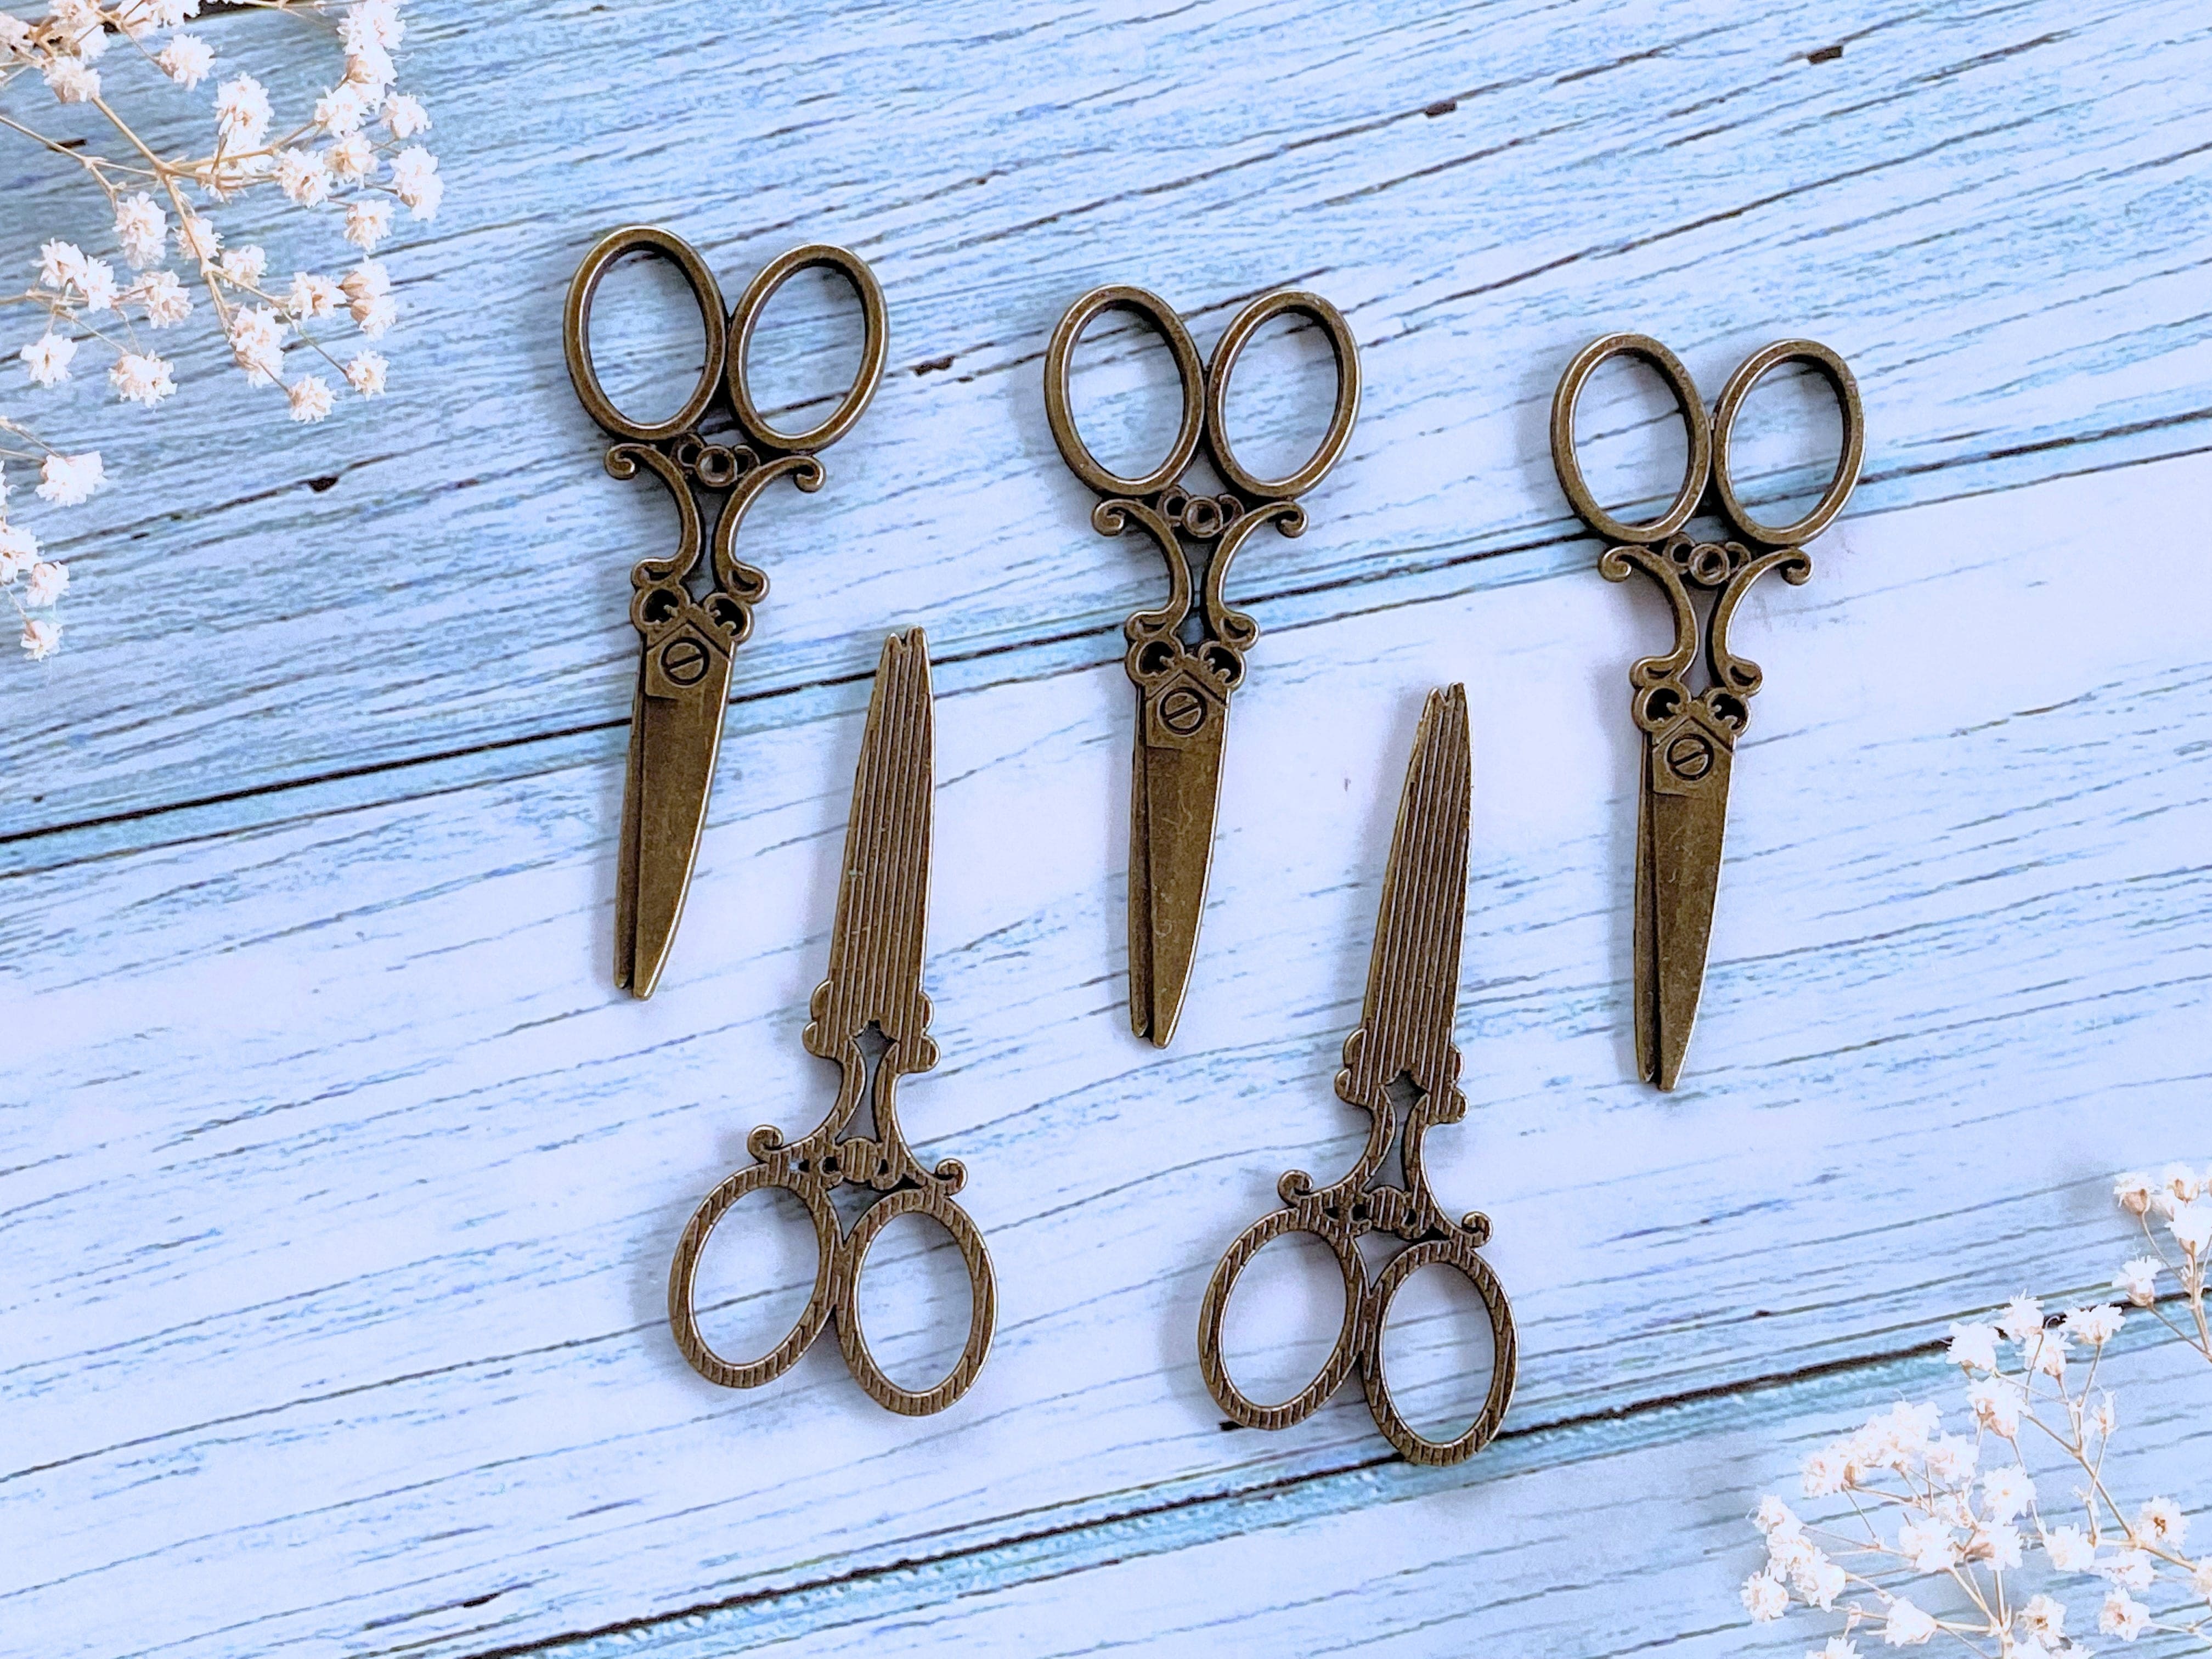 2pcs Vintage Scissors Decorative Components